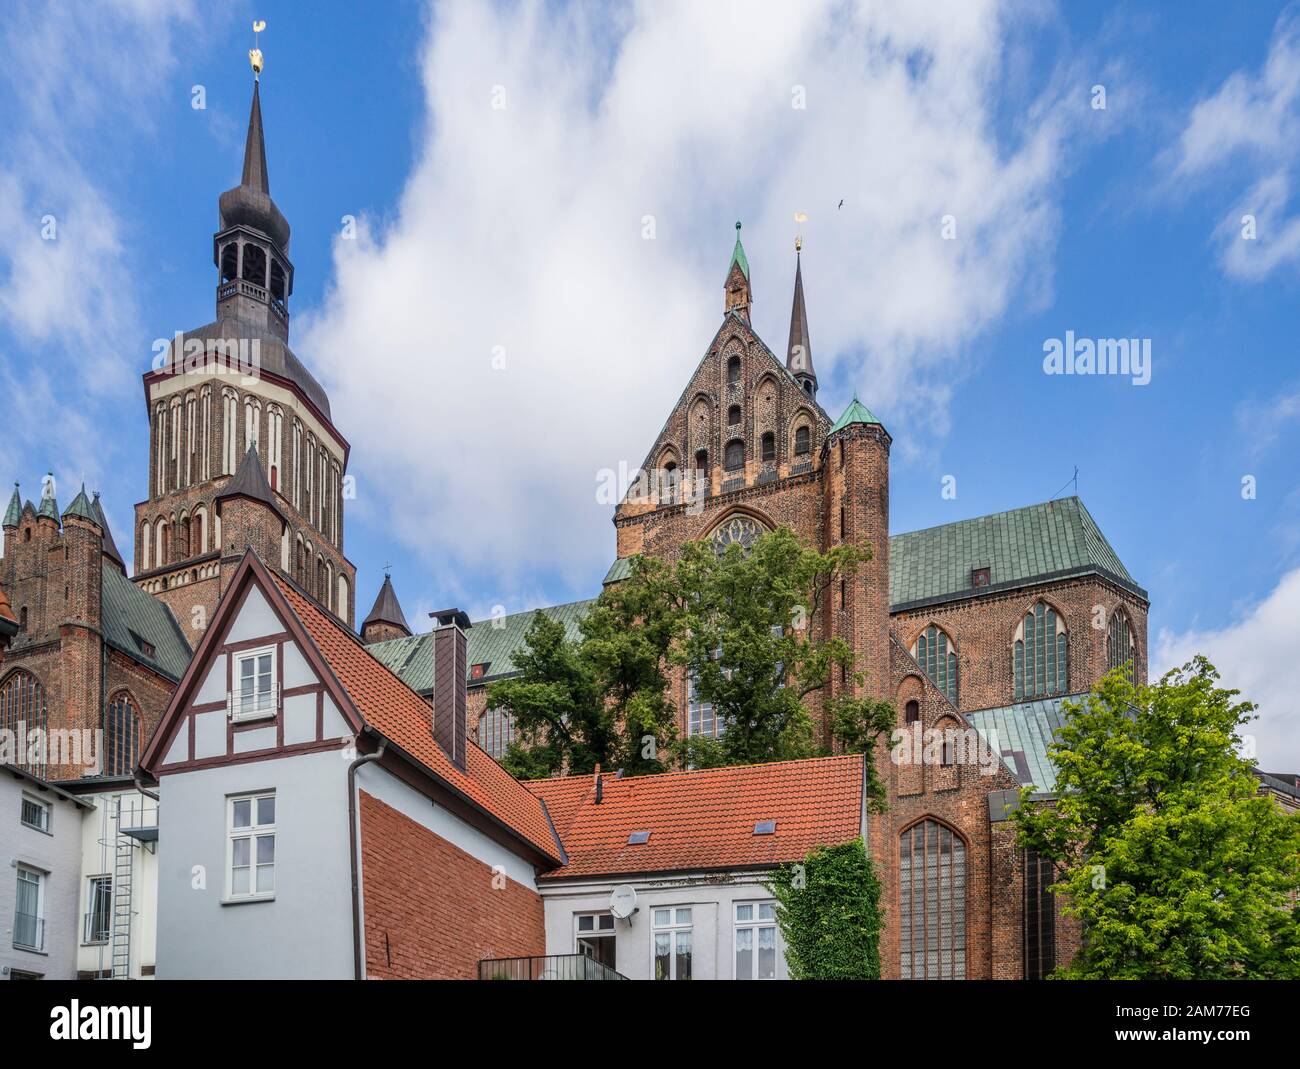 L'église Sainte-Marie en briques rouges pleines qui domine les maisons de la ville hanséatique de Stralsund, Mecklembourg-Poméranie-Occidentale, Allemagne Banque D'Images